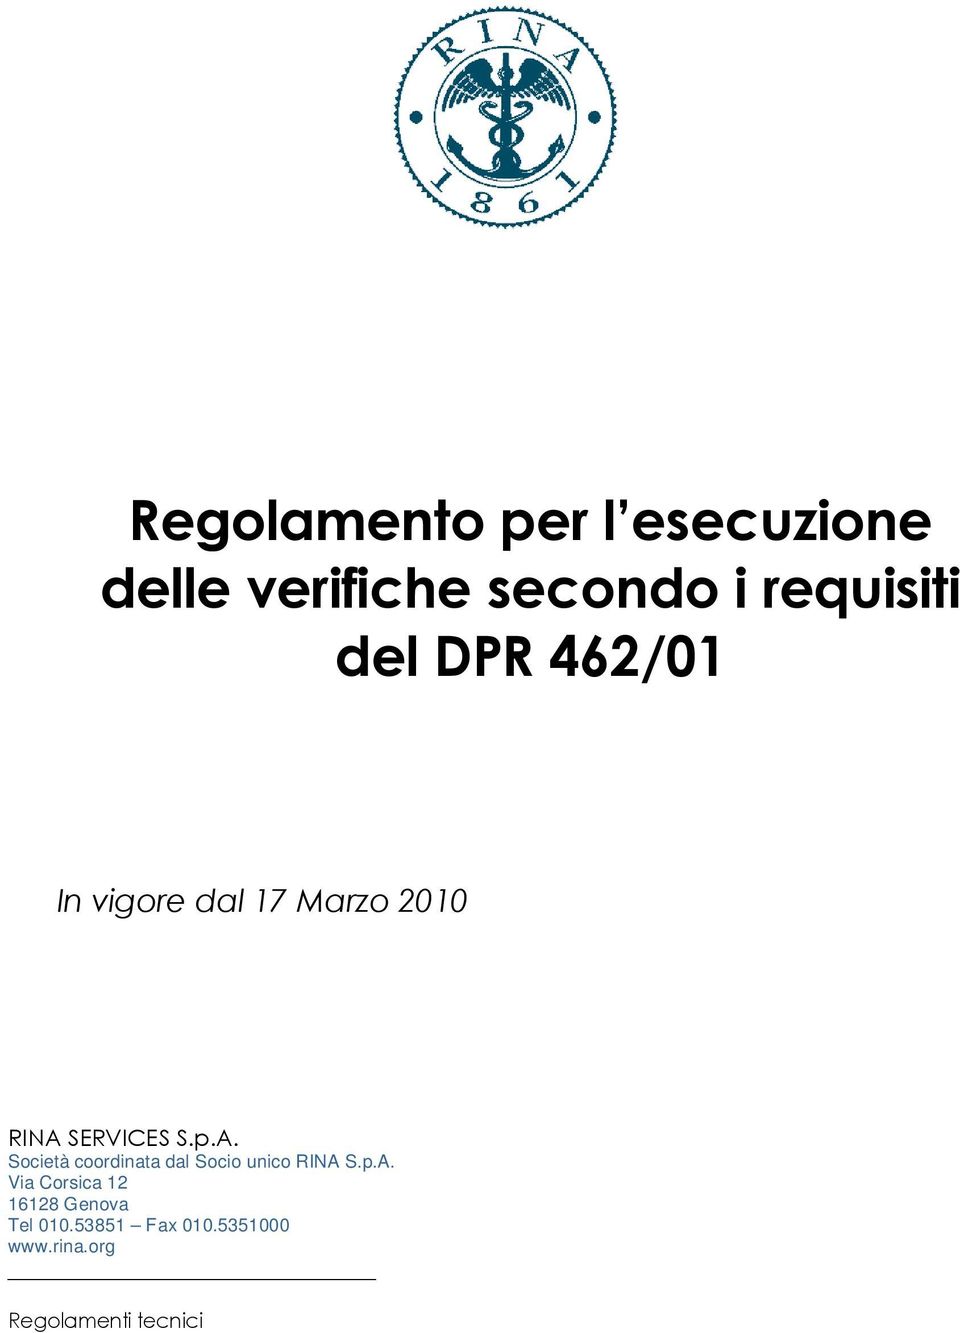 SERVICES S.p.A. Società coordinata dal Socio unico RINA S.p.A. Via Corsica 12 16128 Genova Tel 010.